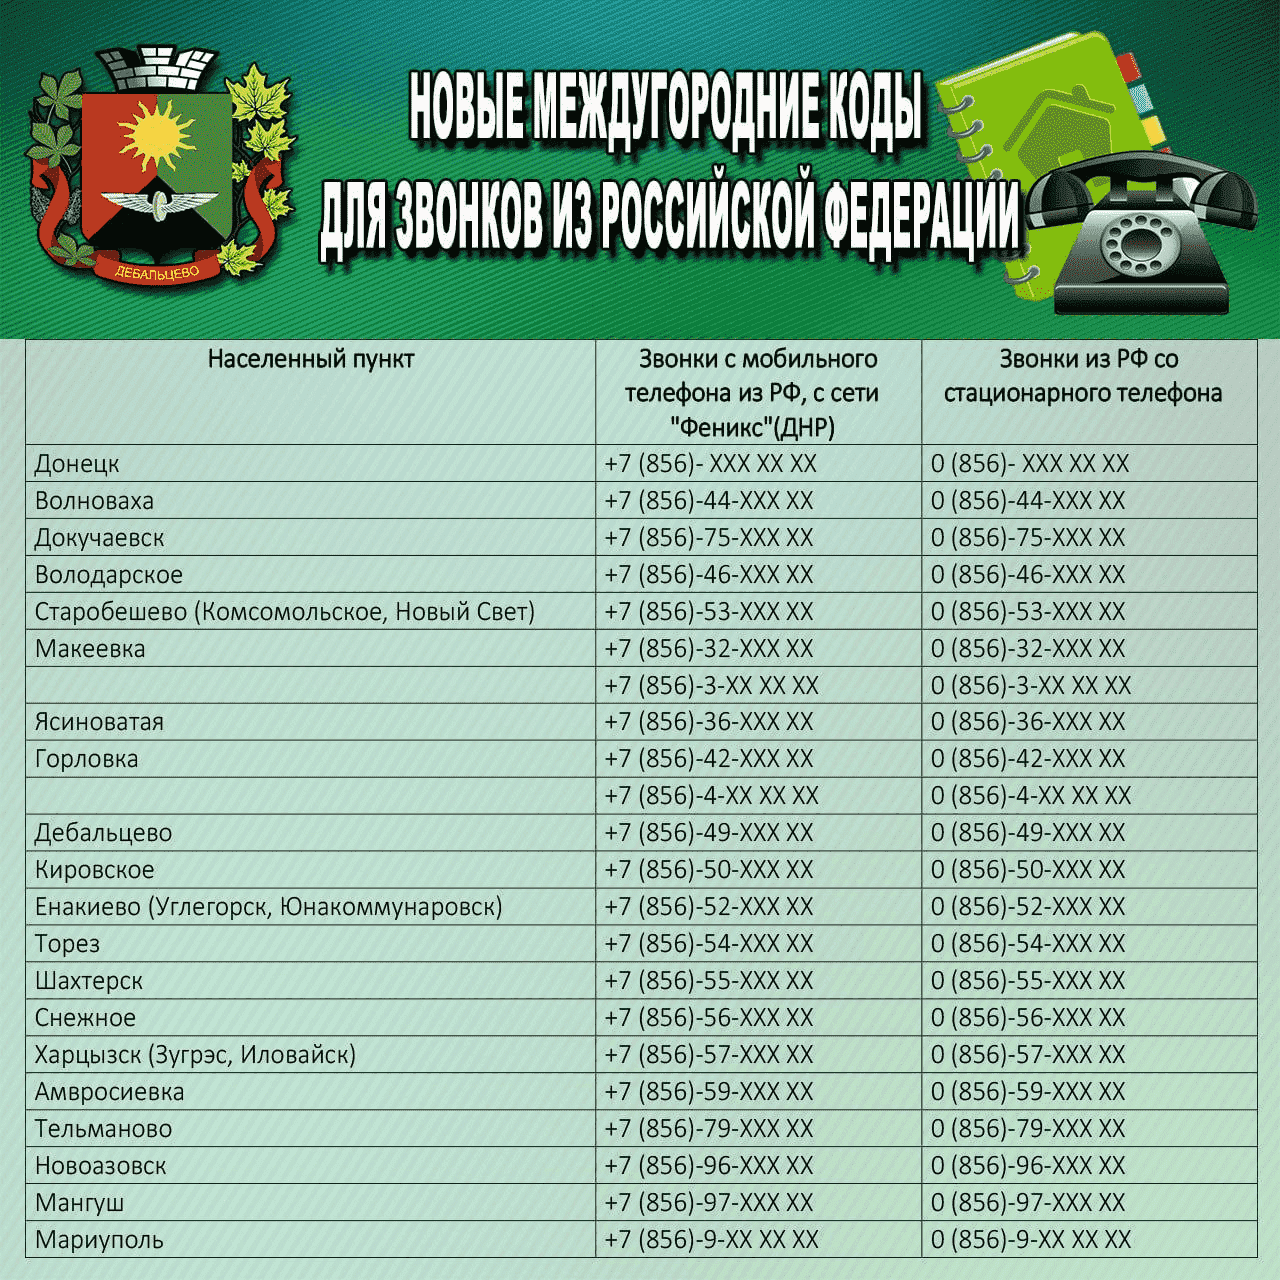 Код россии для мобильного телеграмм телефона с мобильного бесплатно фото 65